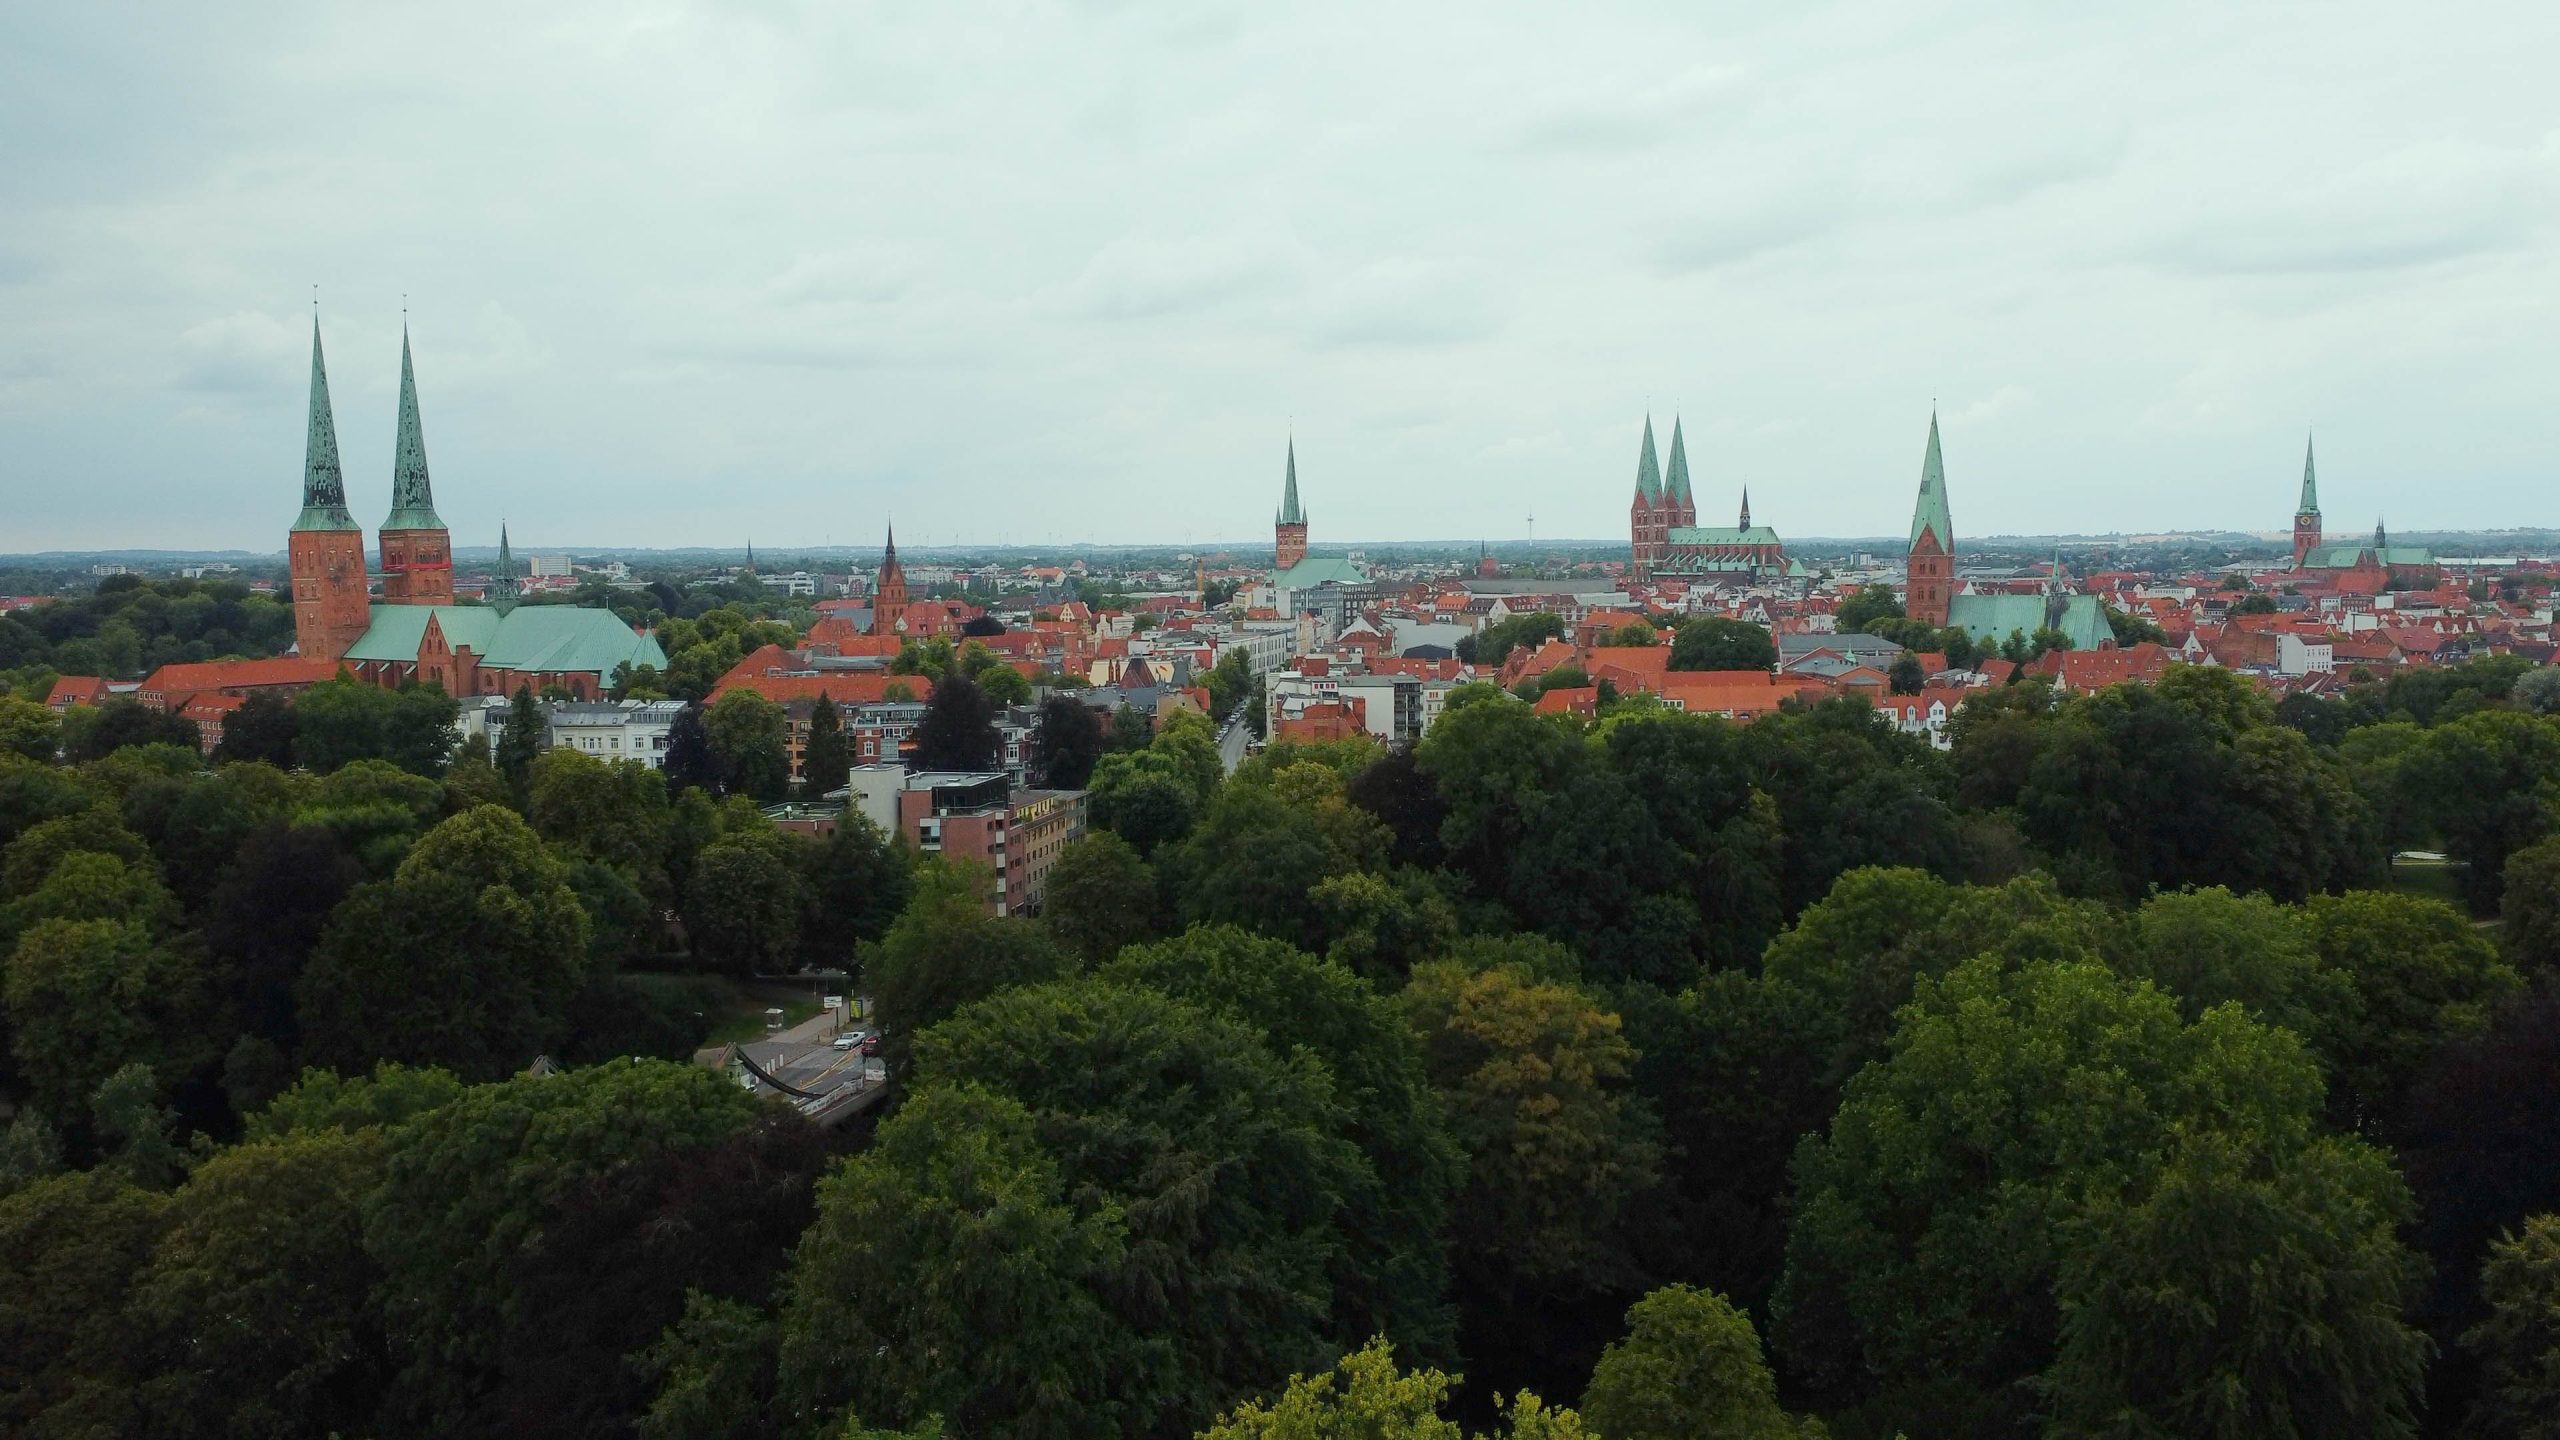 Luftbild der Stadt Lübeck, im Vordergrund Baumkronen, dahinter hohe Kirchtürme und Dächer historischer Gebäude am Horizont